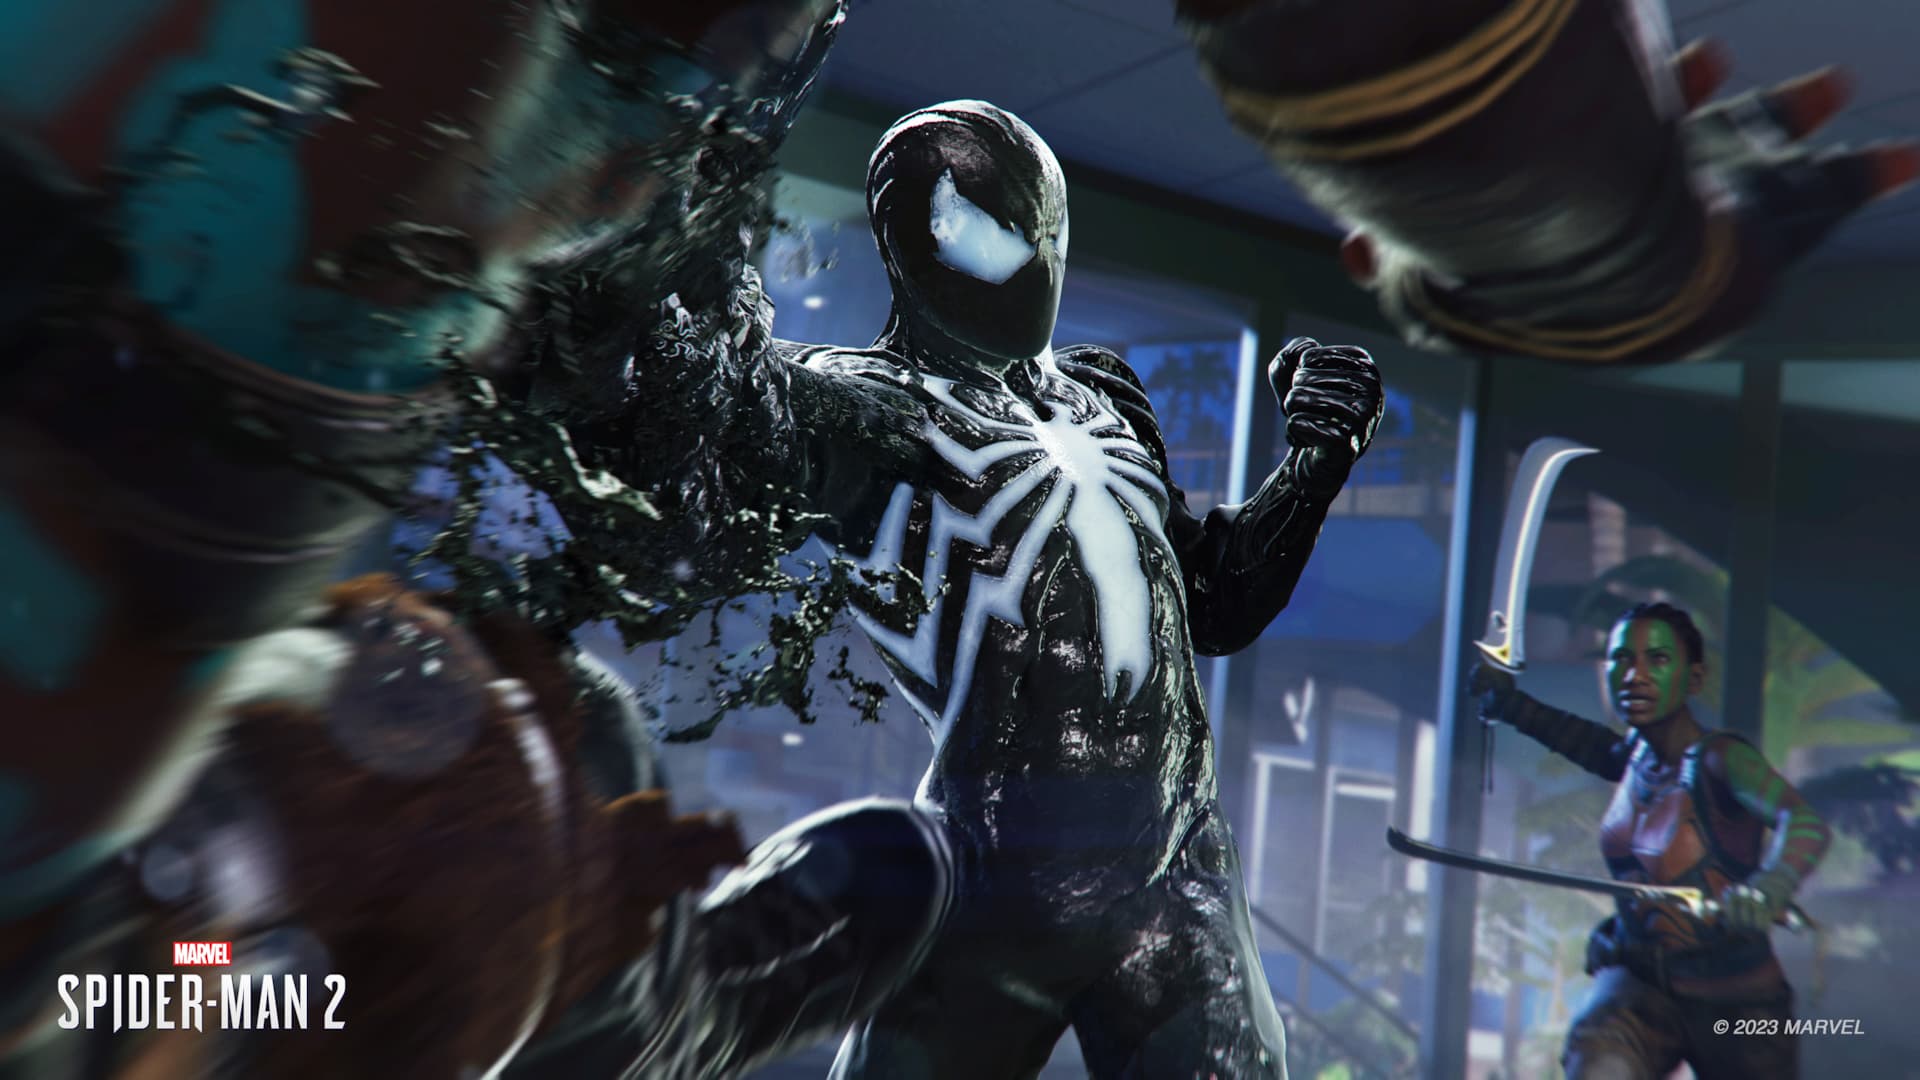 QUANTO TEMPO LEVA PARA ZERAR O MARVEL'S SPIDER-MAN? #spiderman